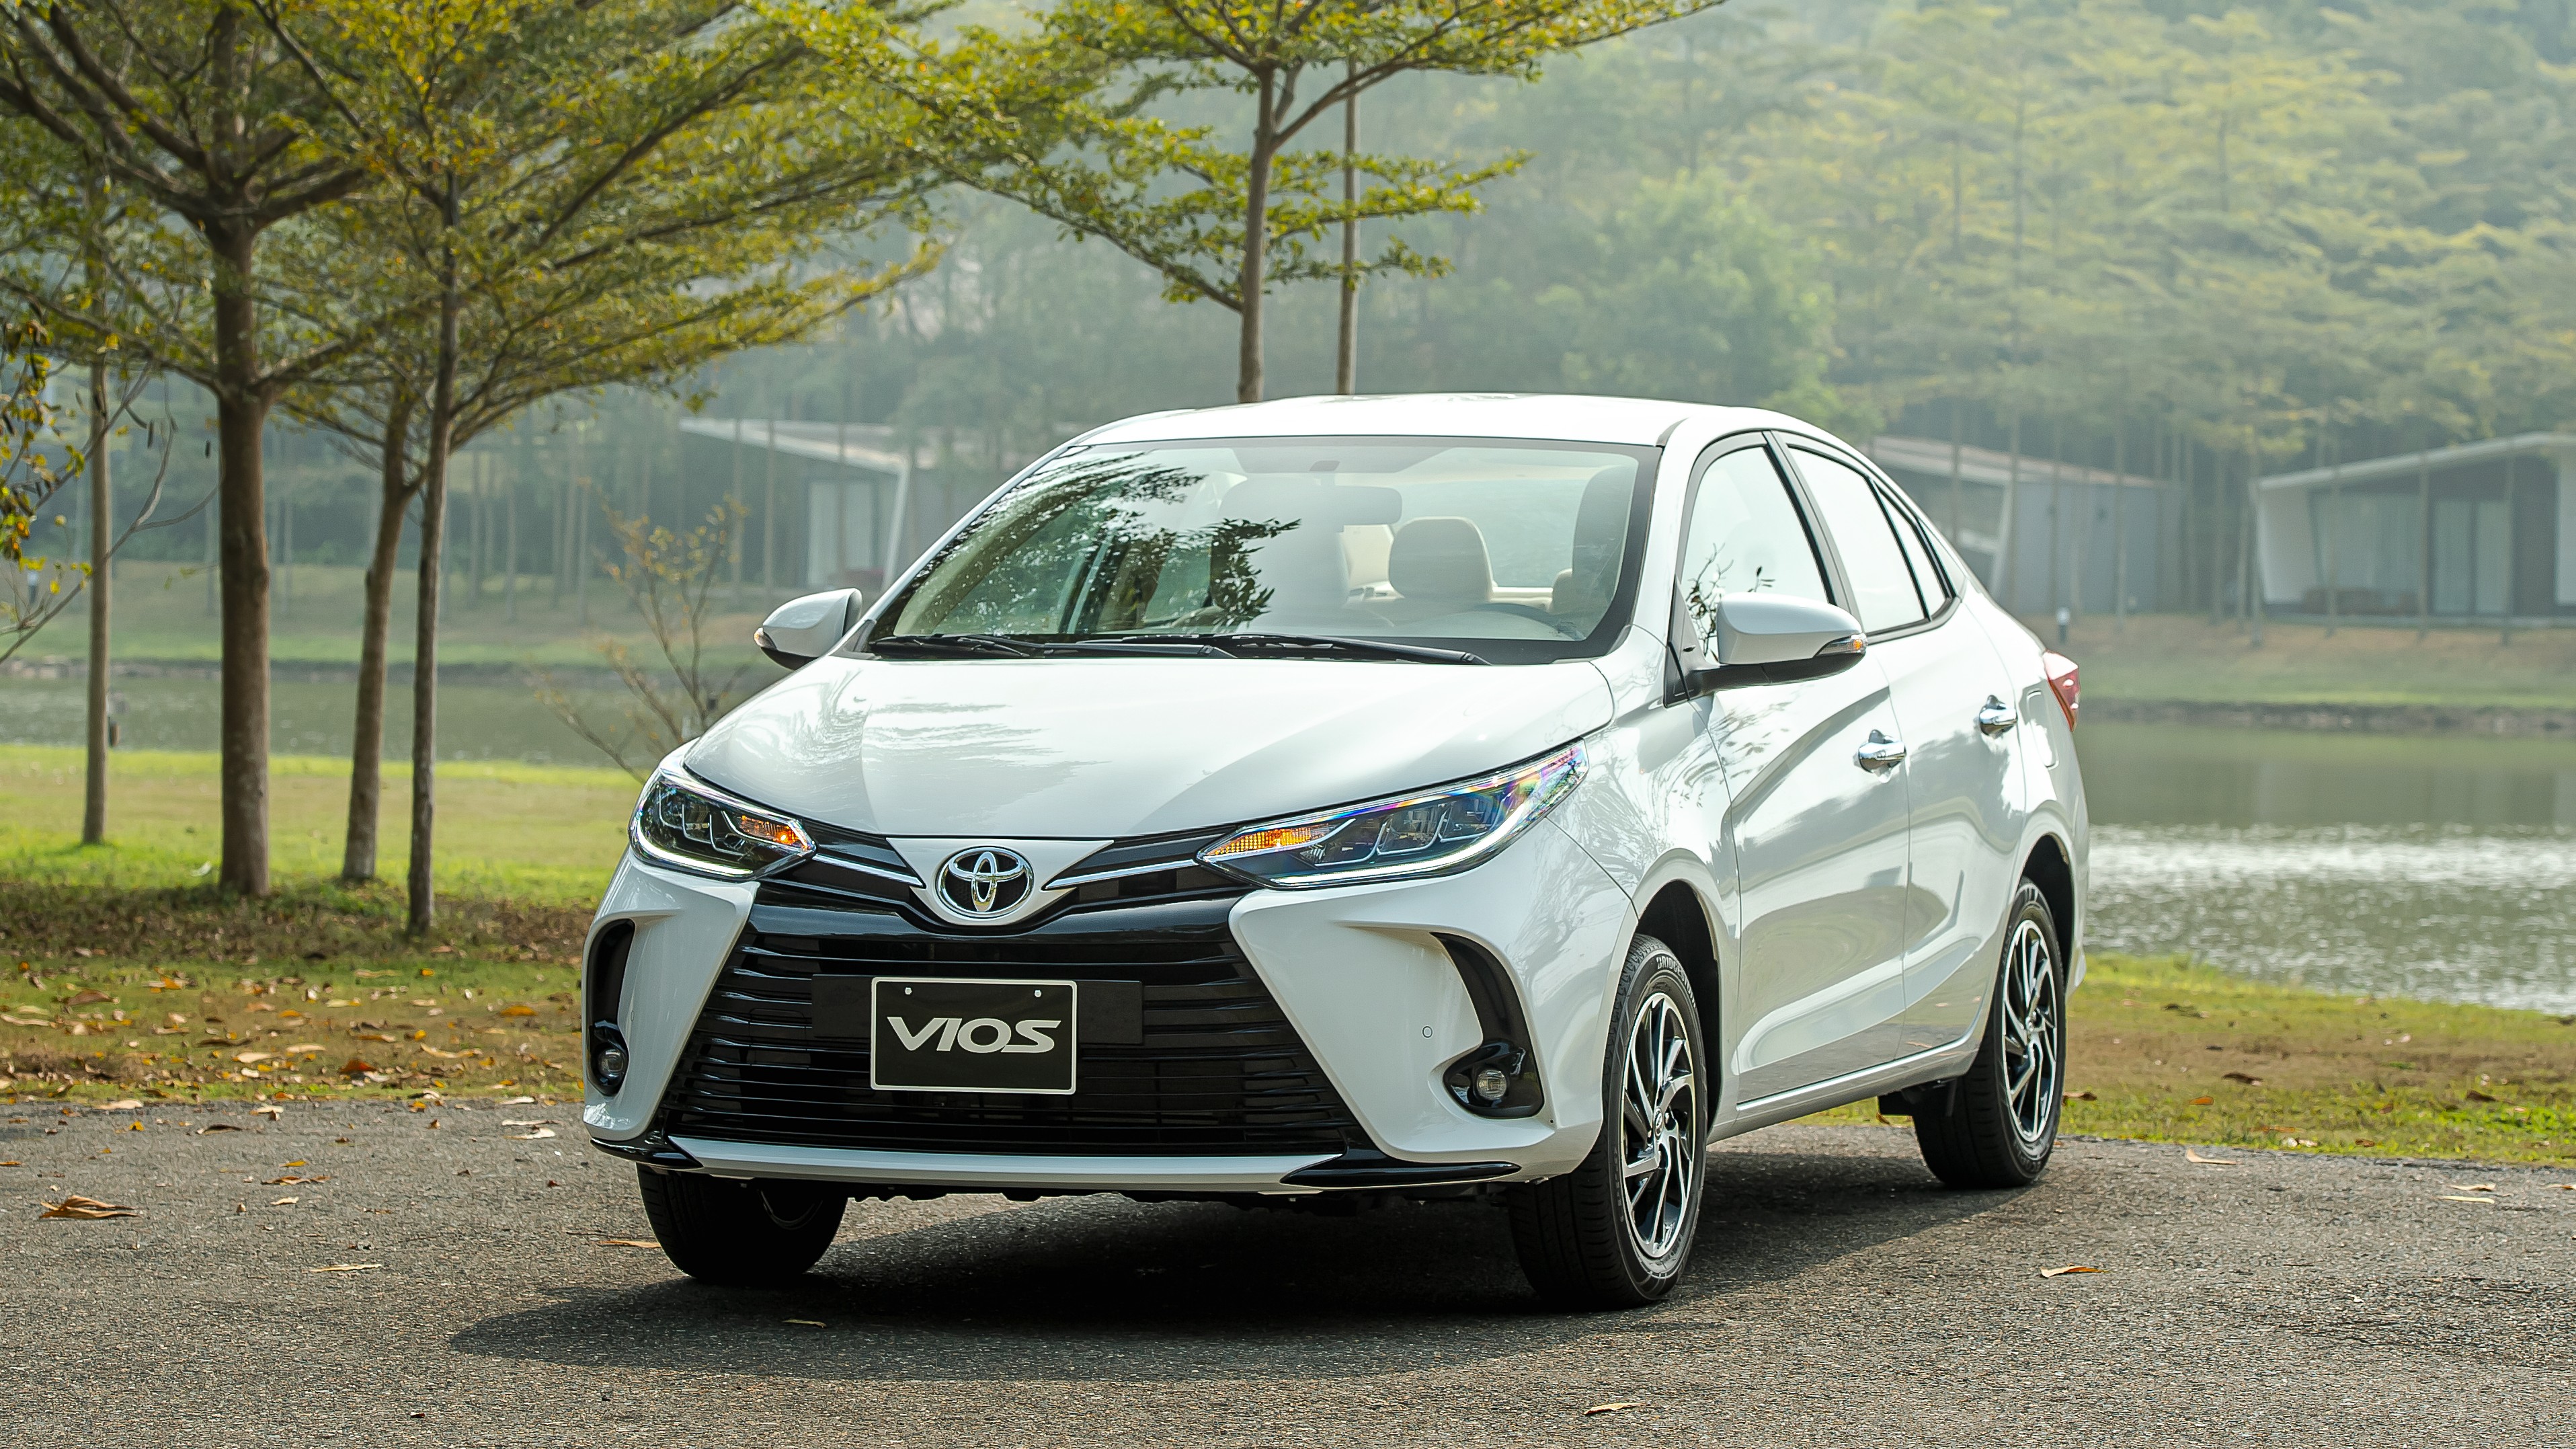 Toyota Vios duy trì cách biệt với Hyundai Accent tháng 3/2022